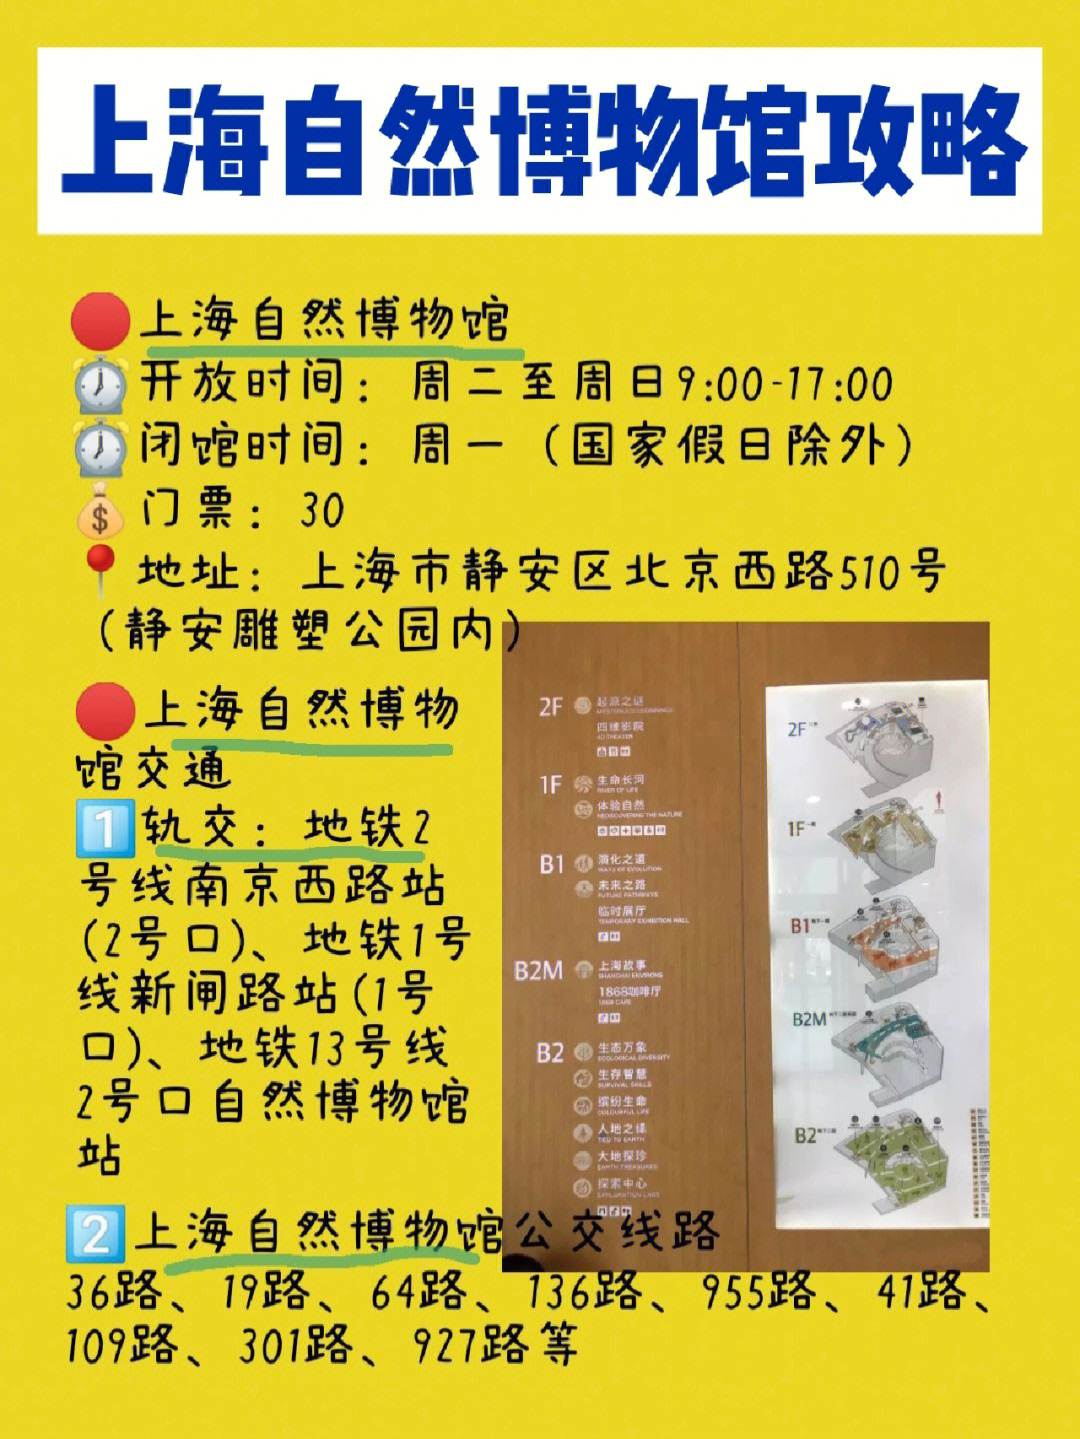 上海博物馆路线图图片